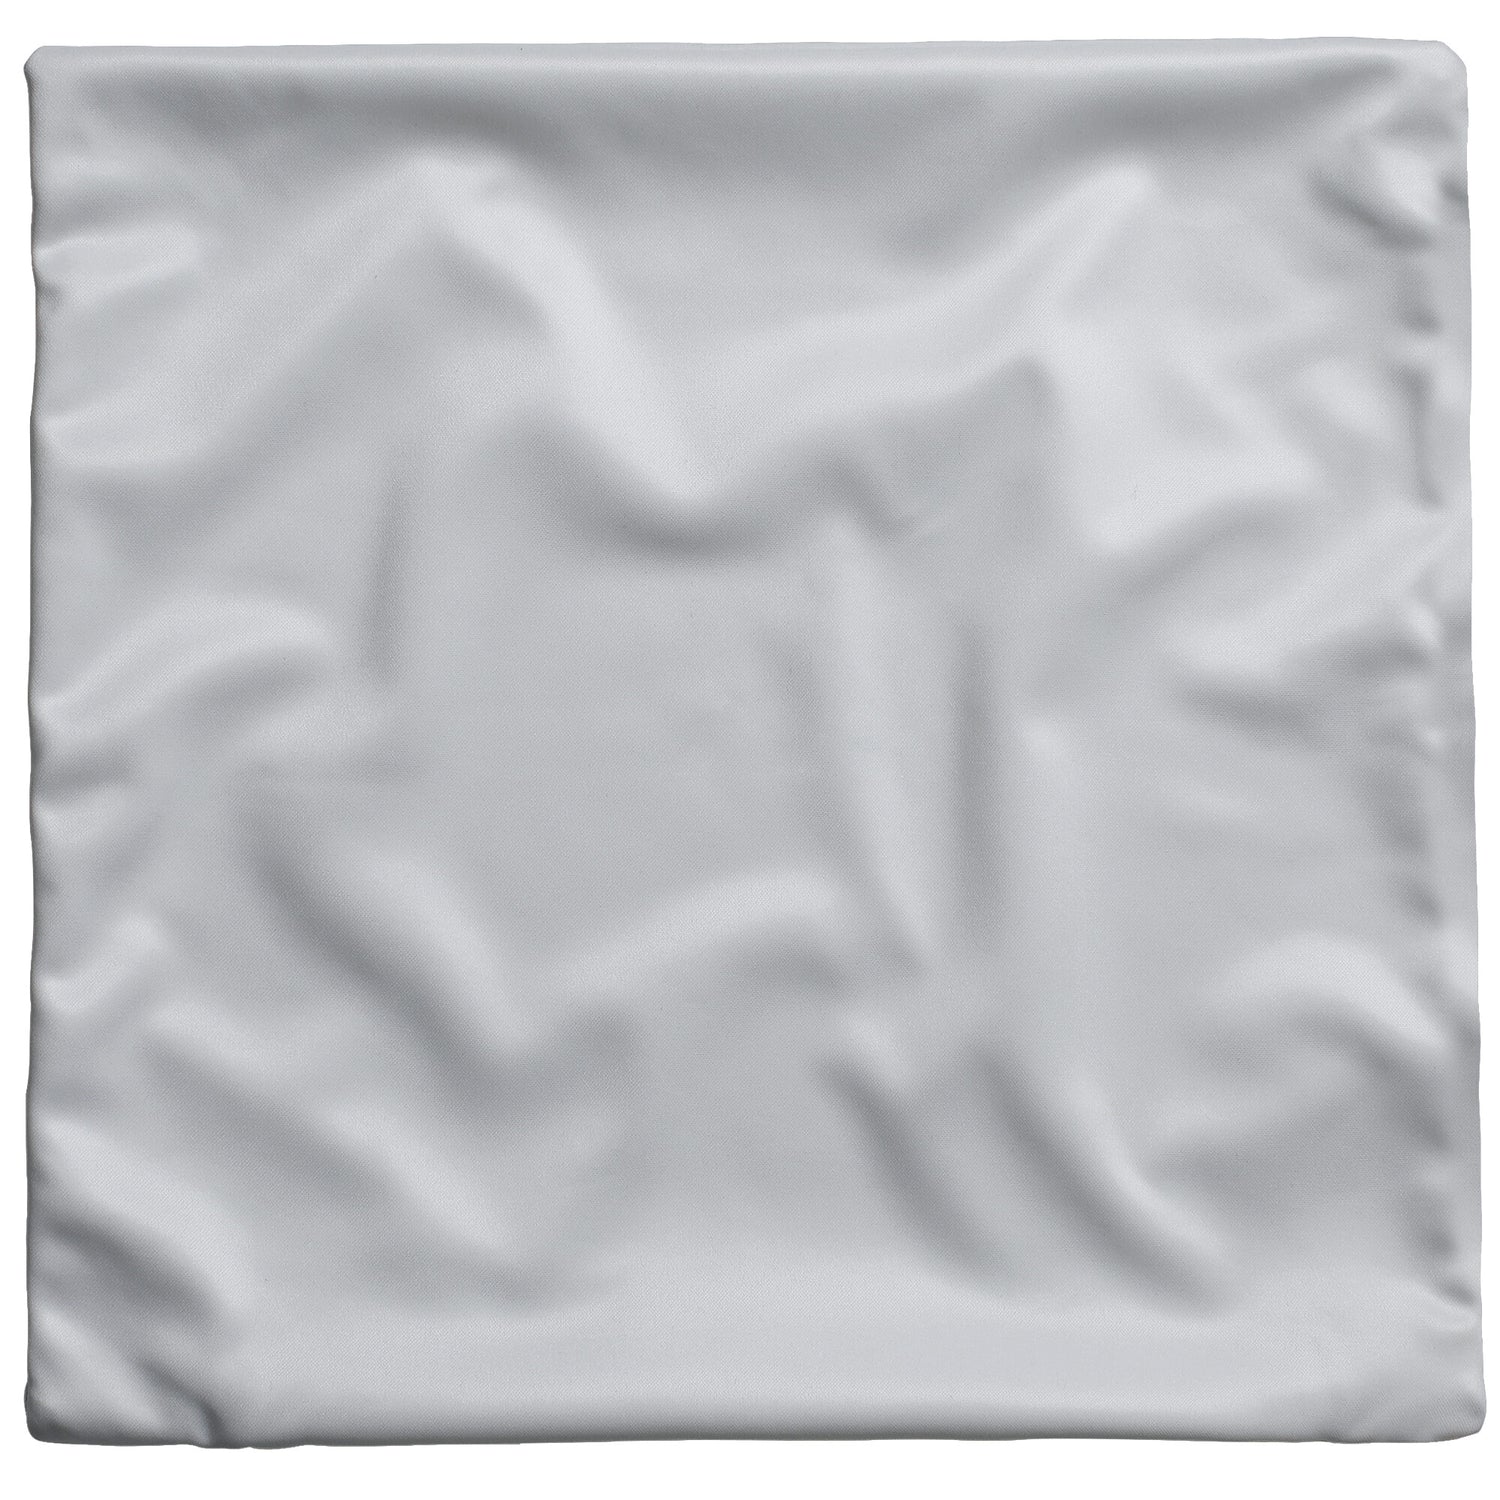 Light gray pillow cover back